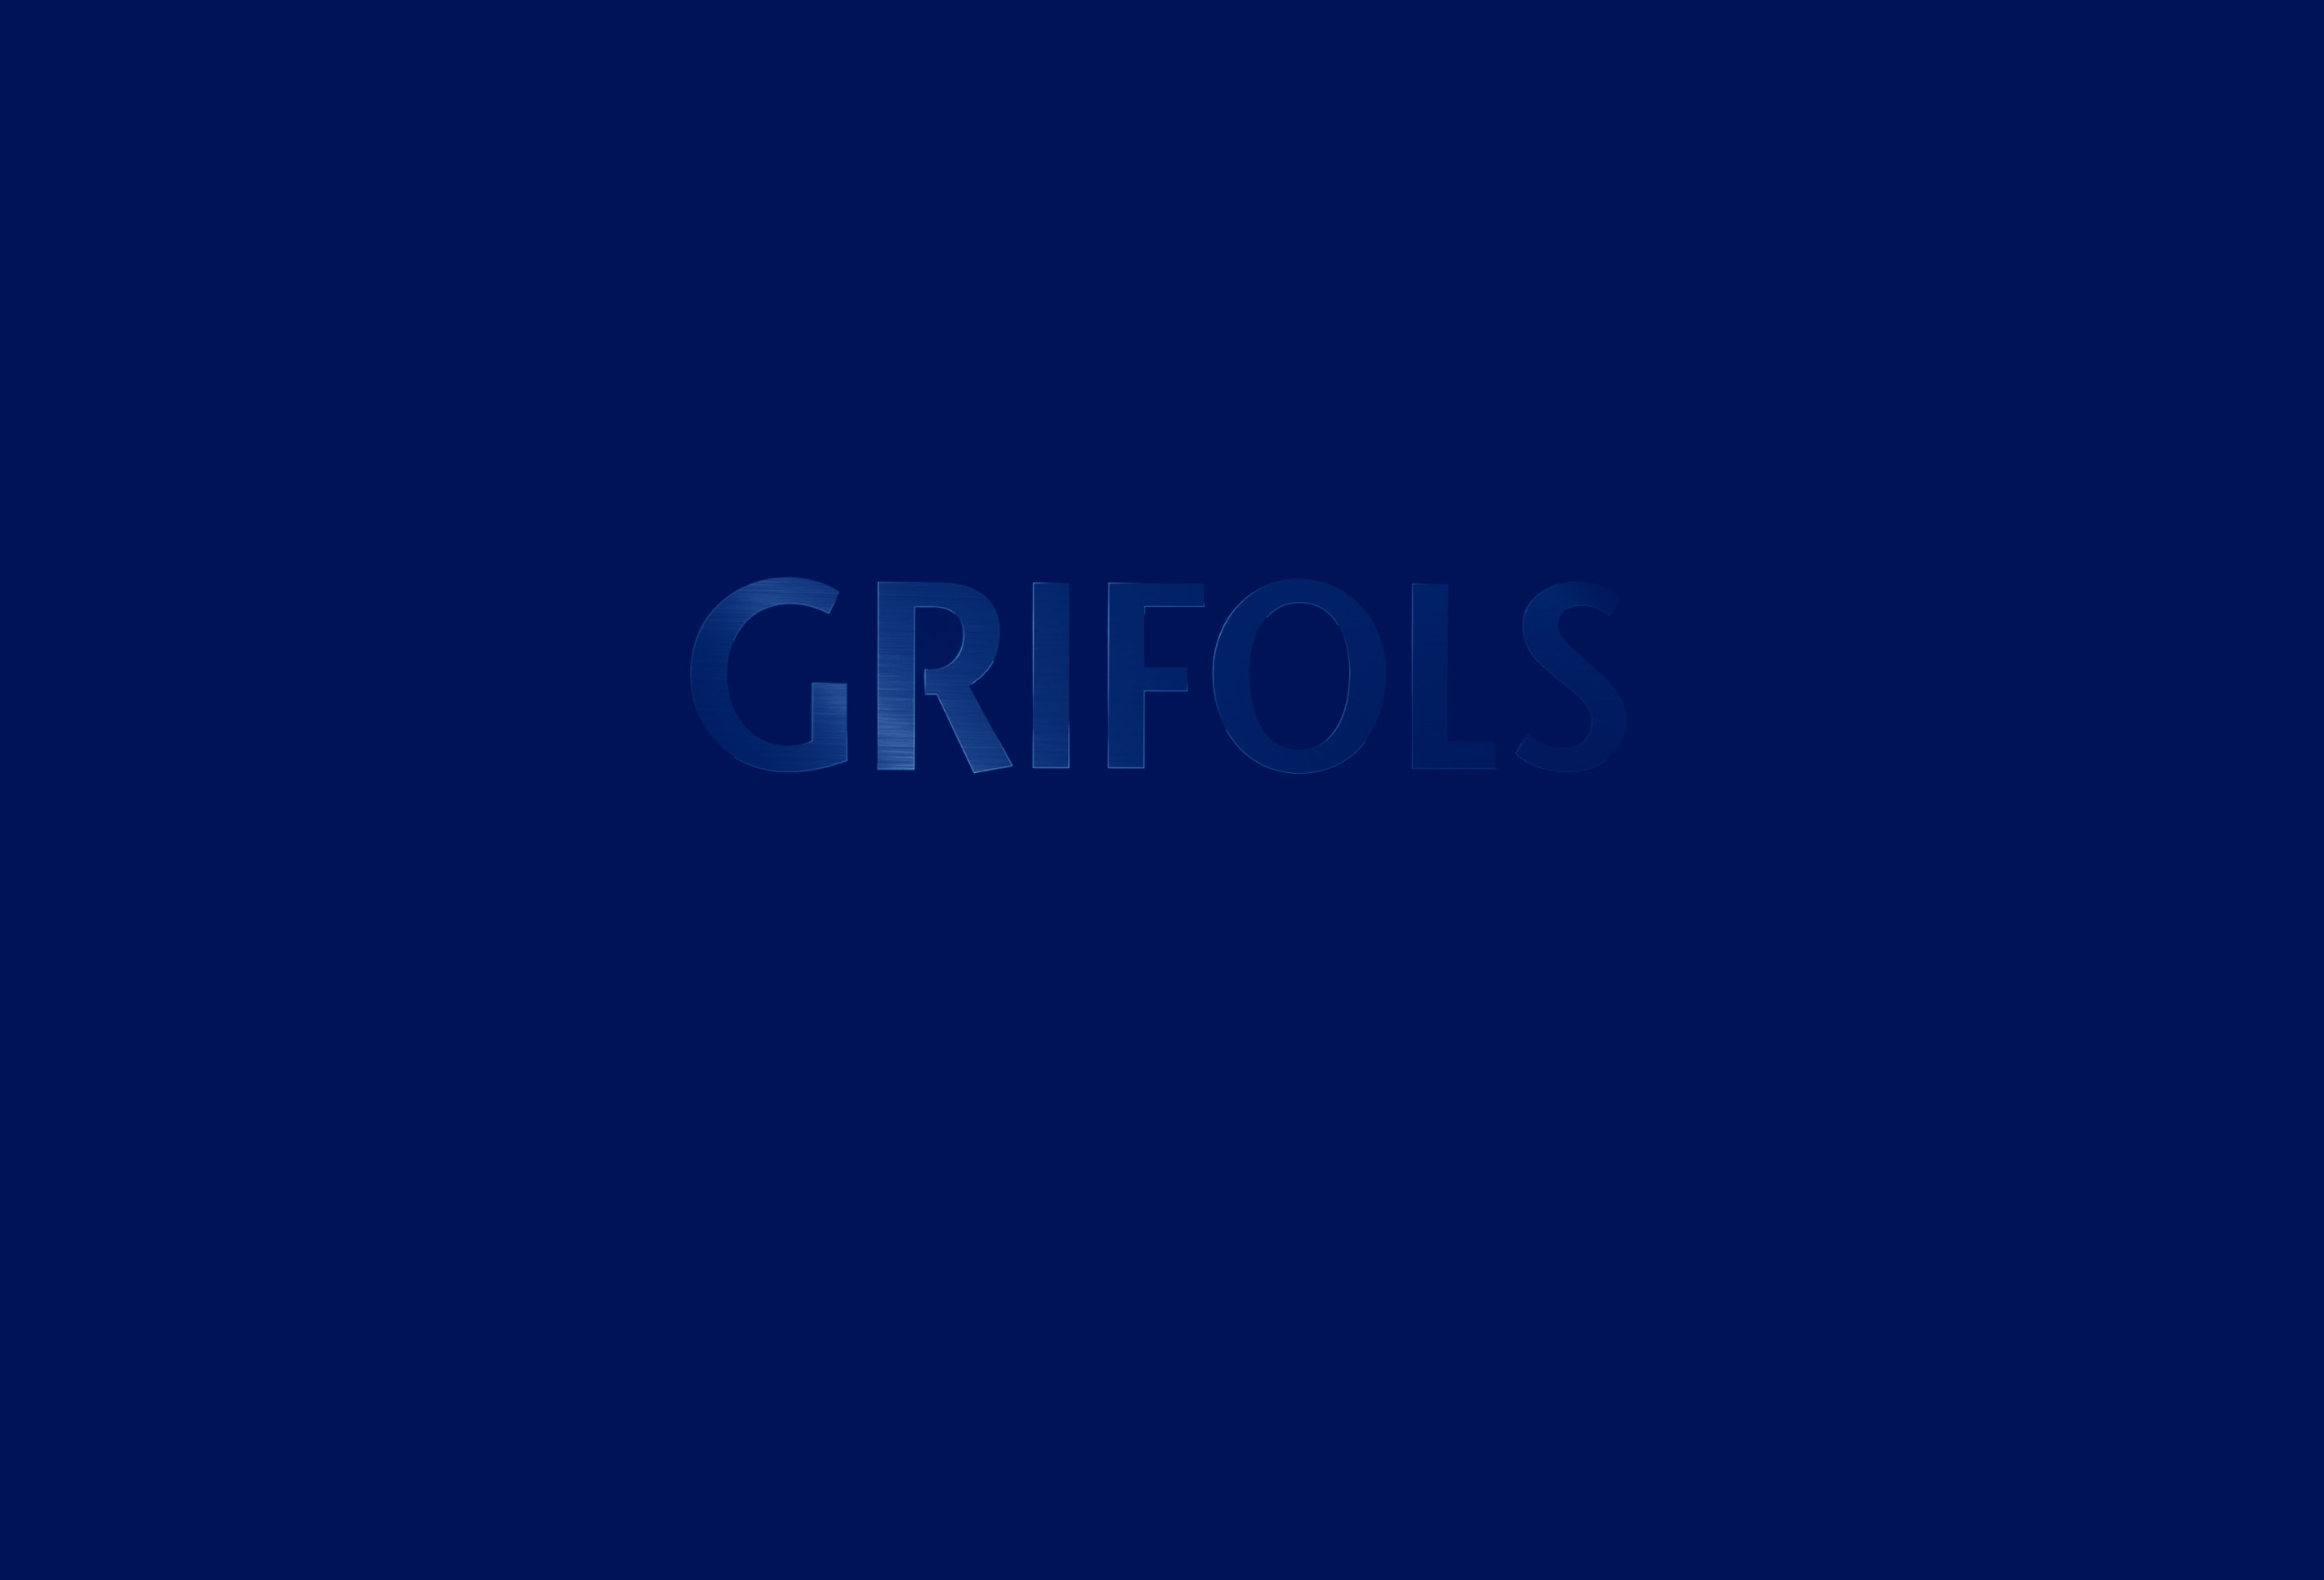 Grifols - Arquitectura de Marca